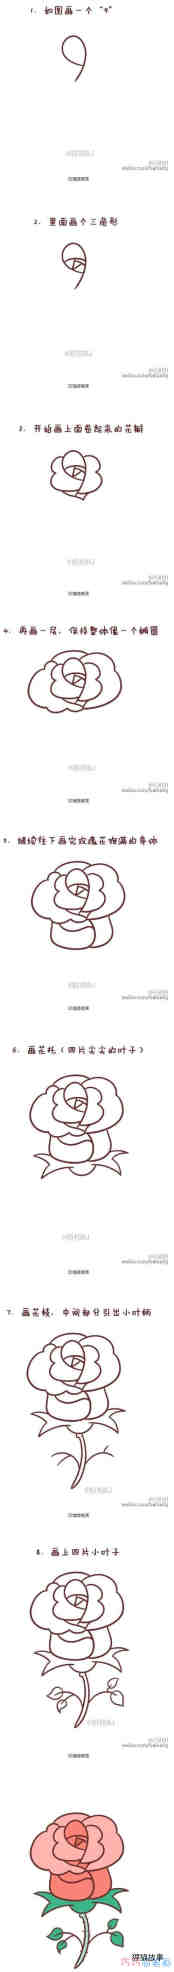 绘本故事七夕情人节玫瑰花的画法详细步骤教程漂亮